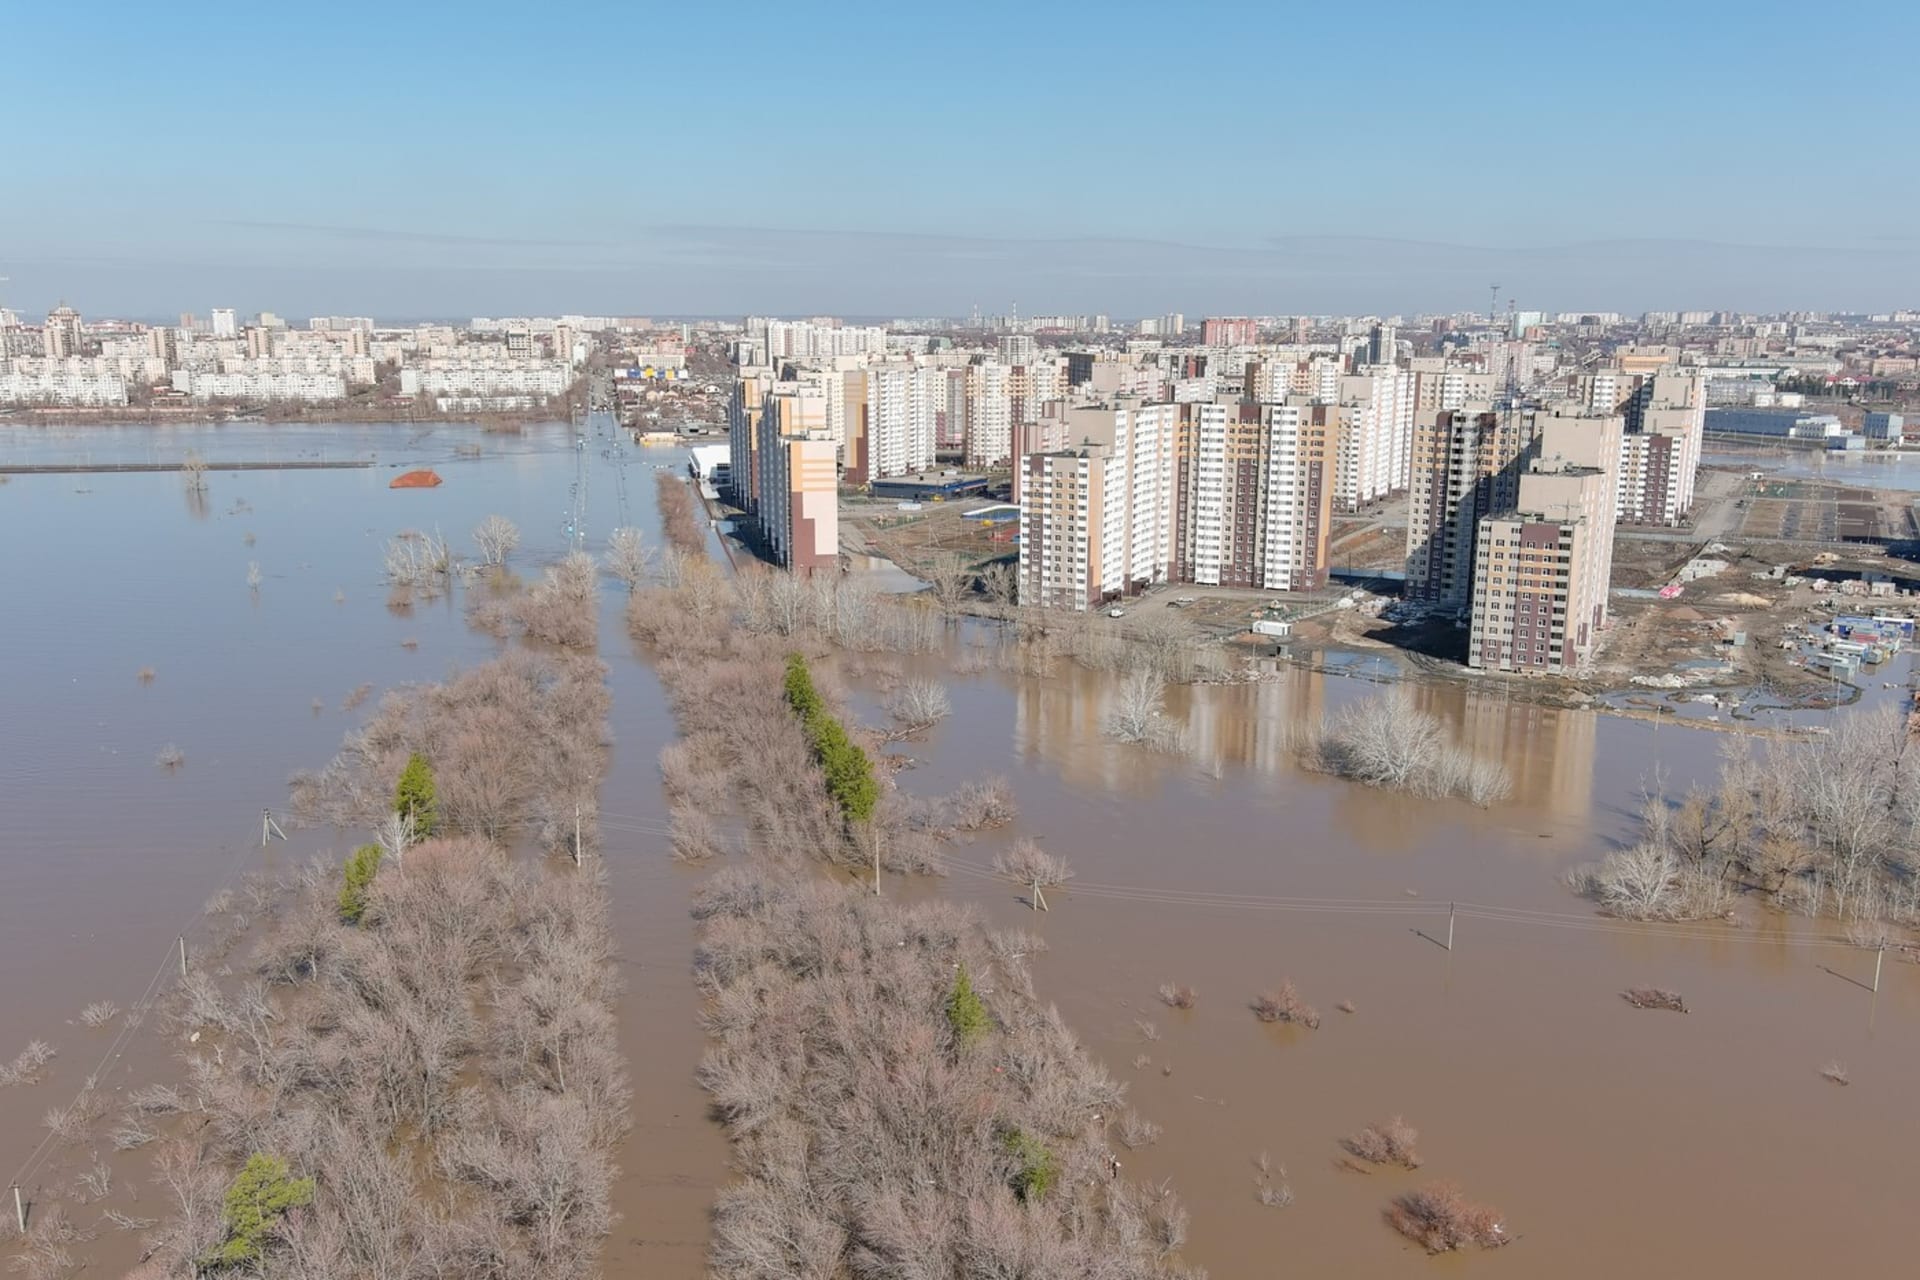 Hladina řeky Ural ve městě Orenburg stále stoupá.